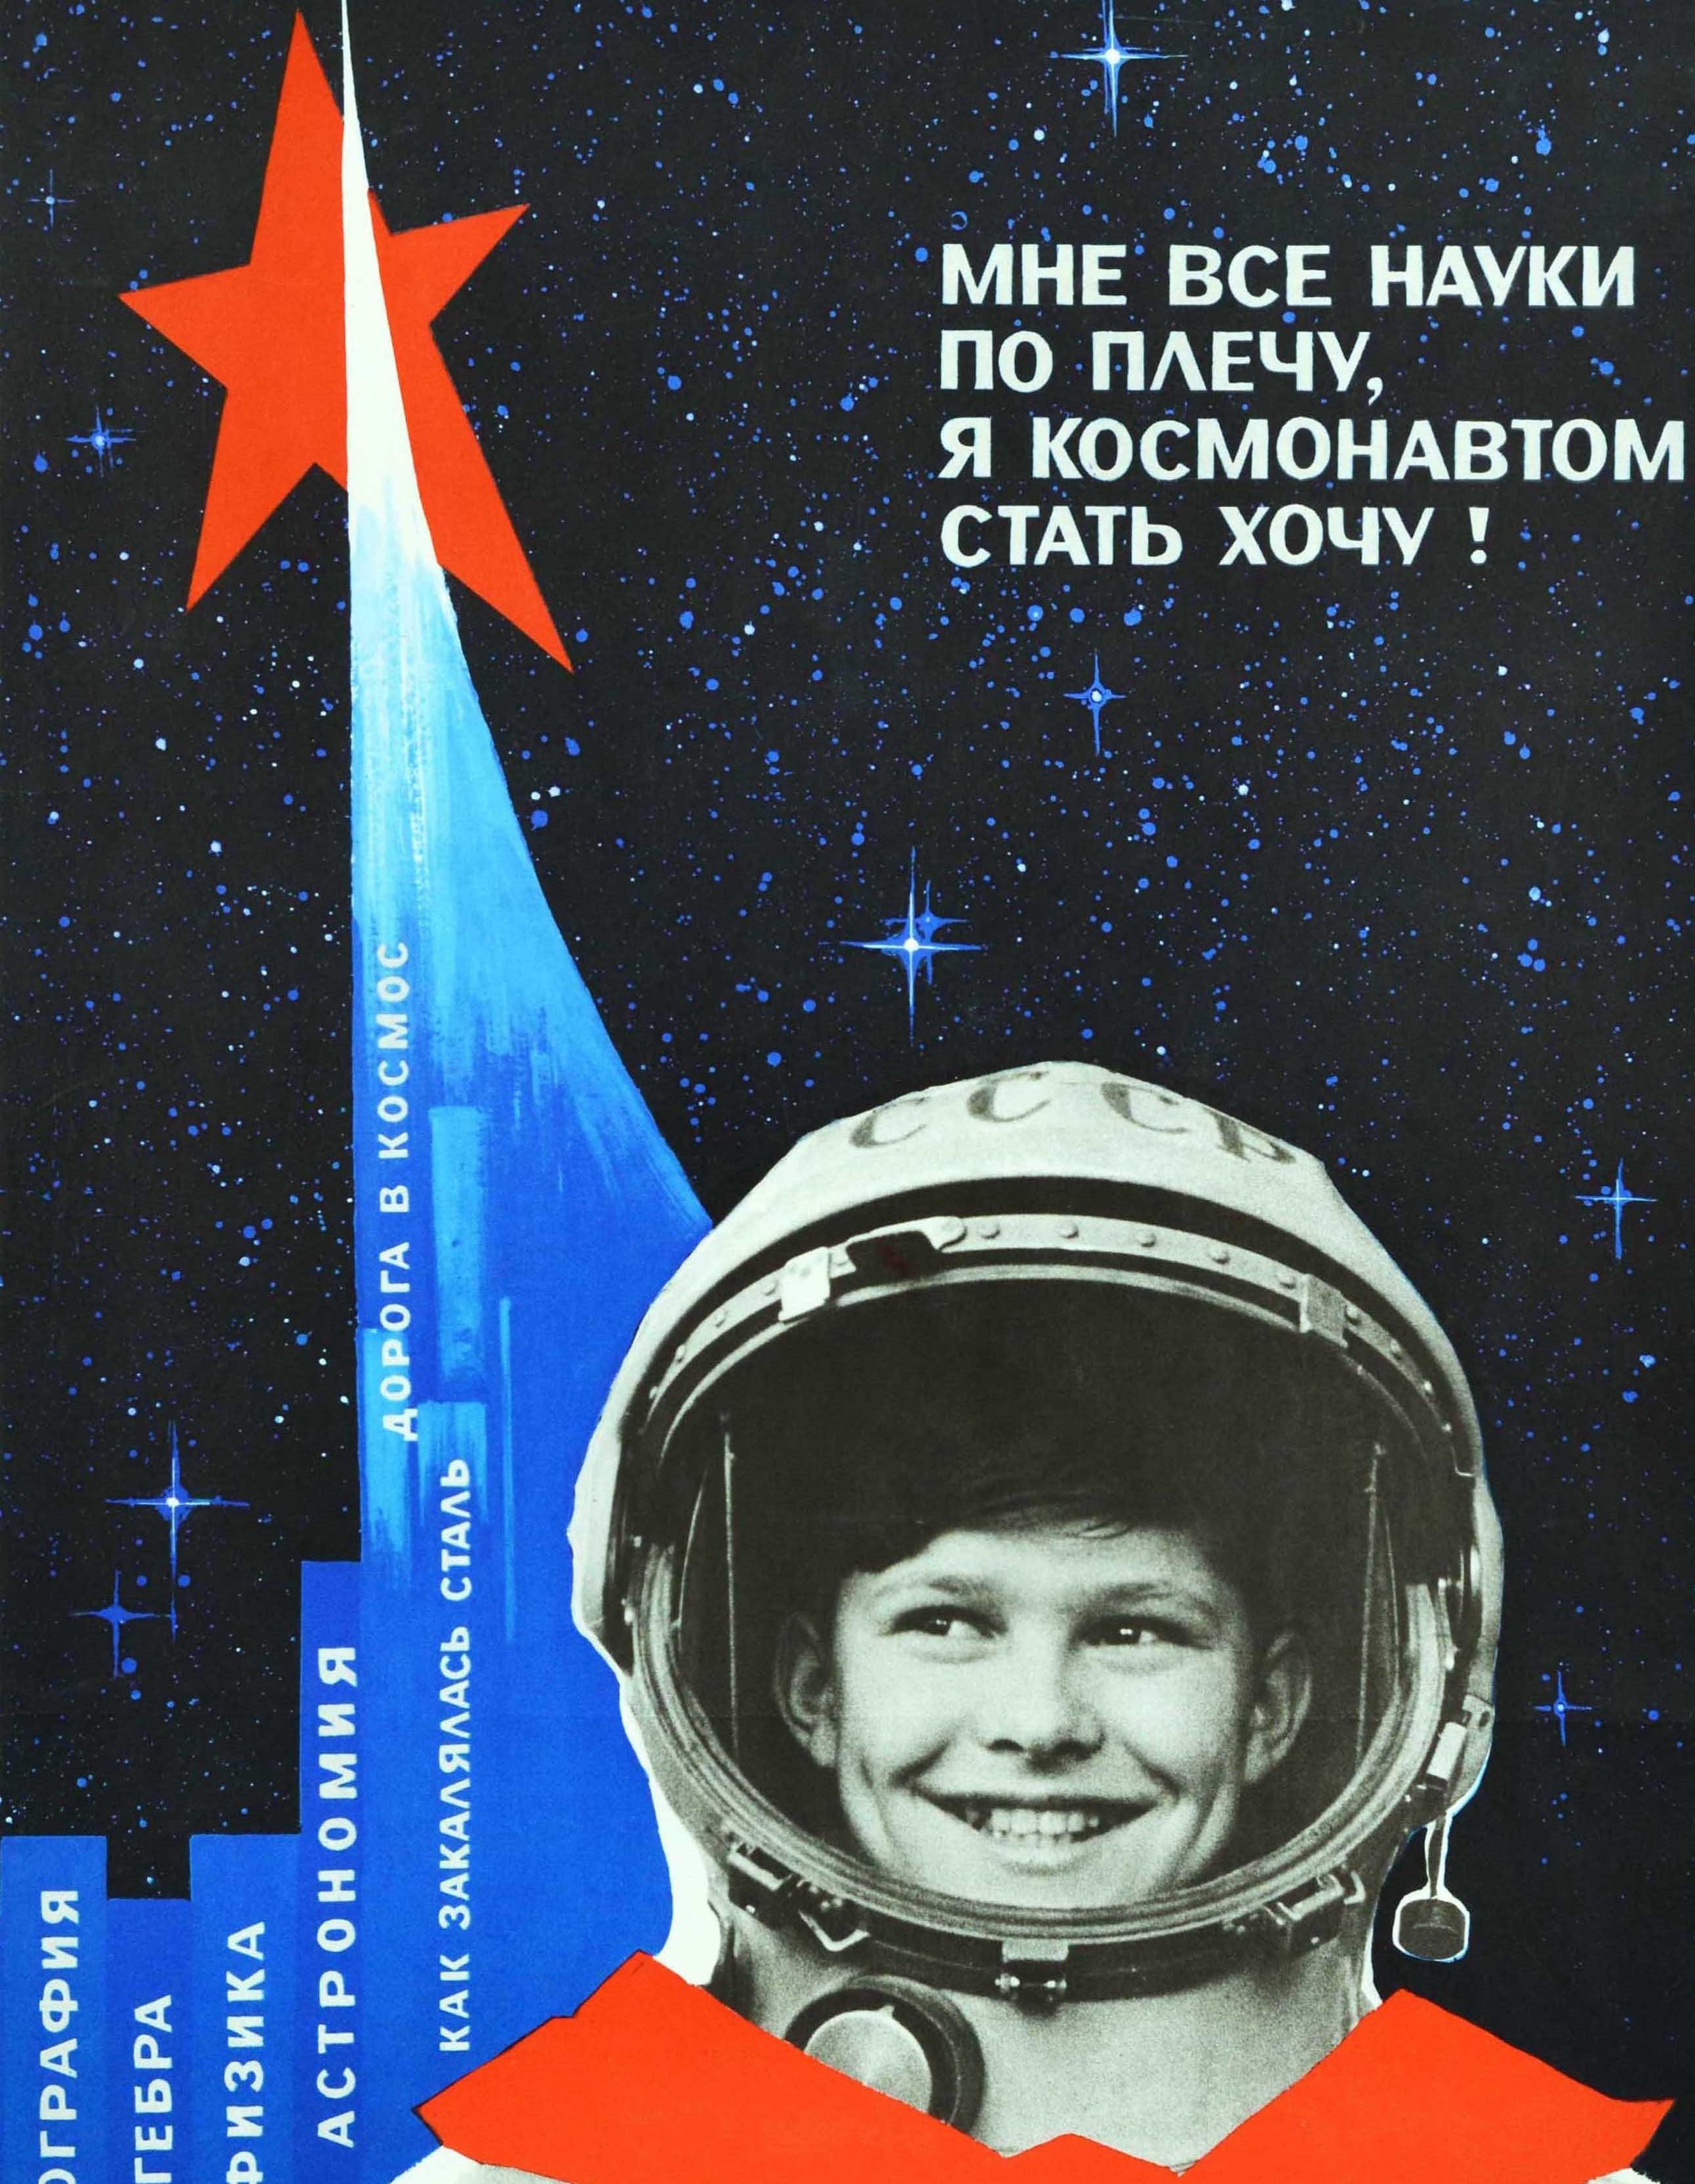 vintage space posters